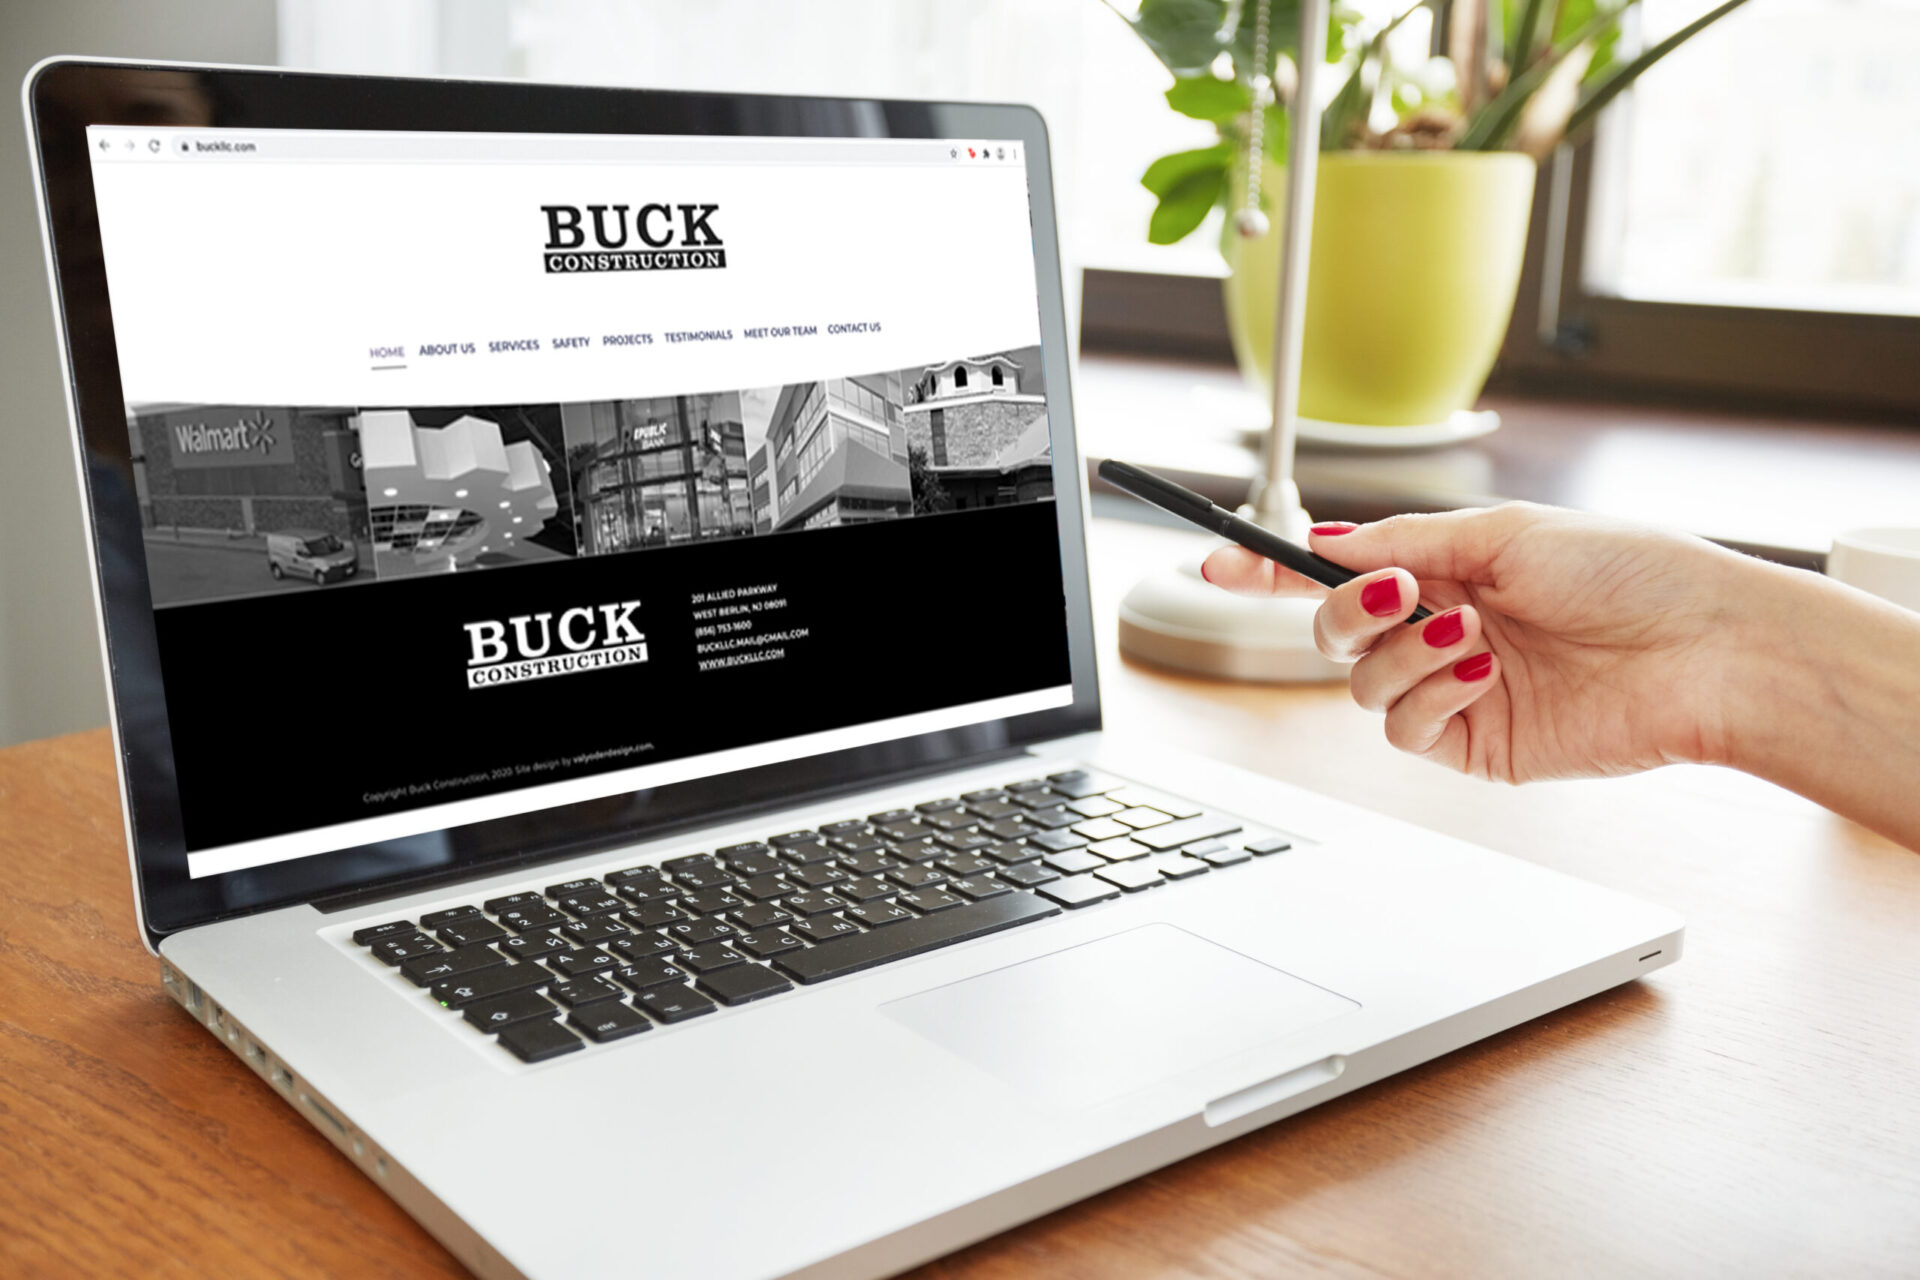 Buck Construction (link below)